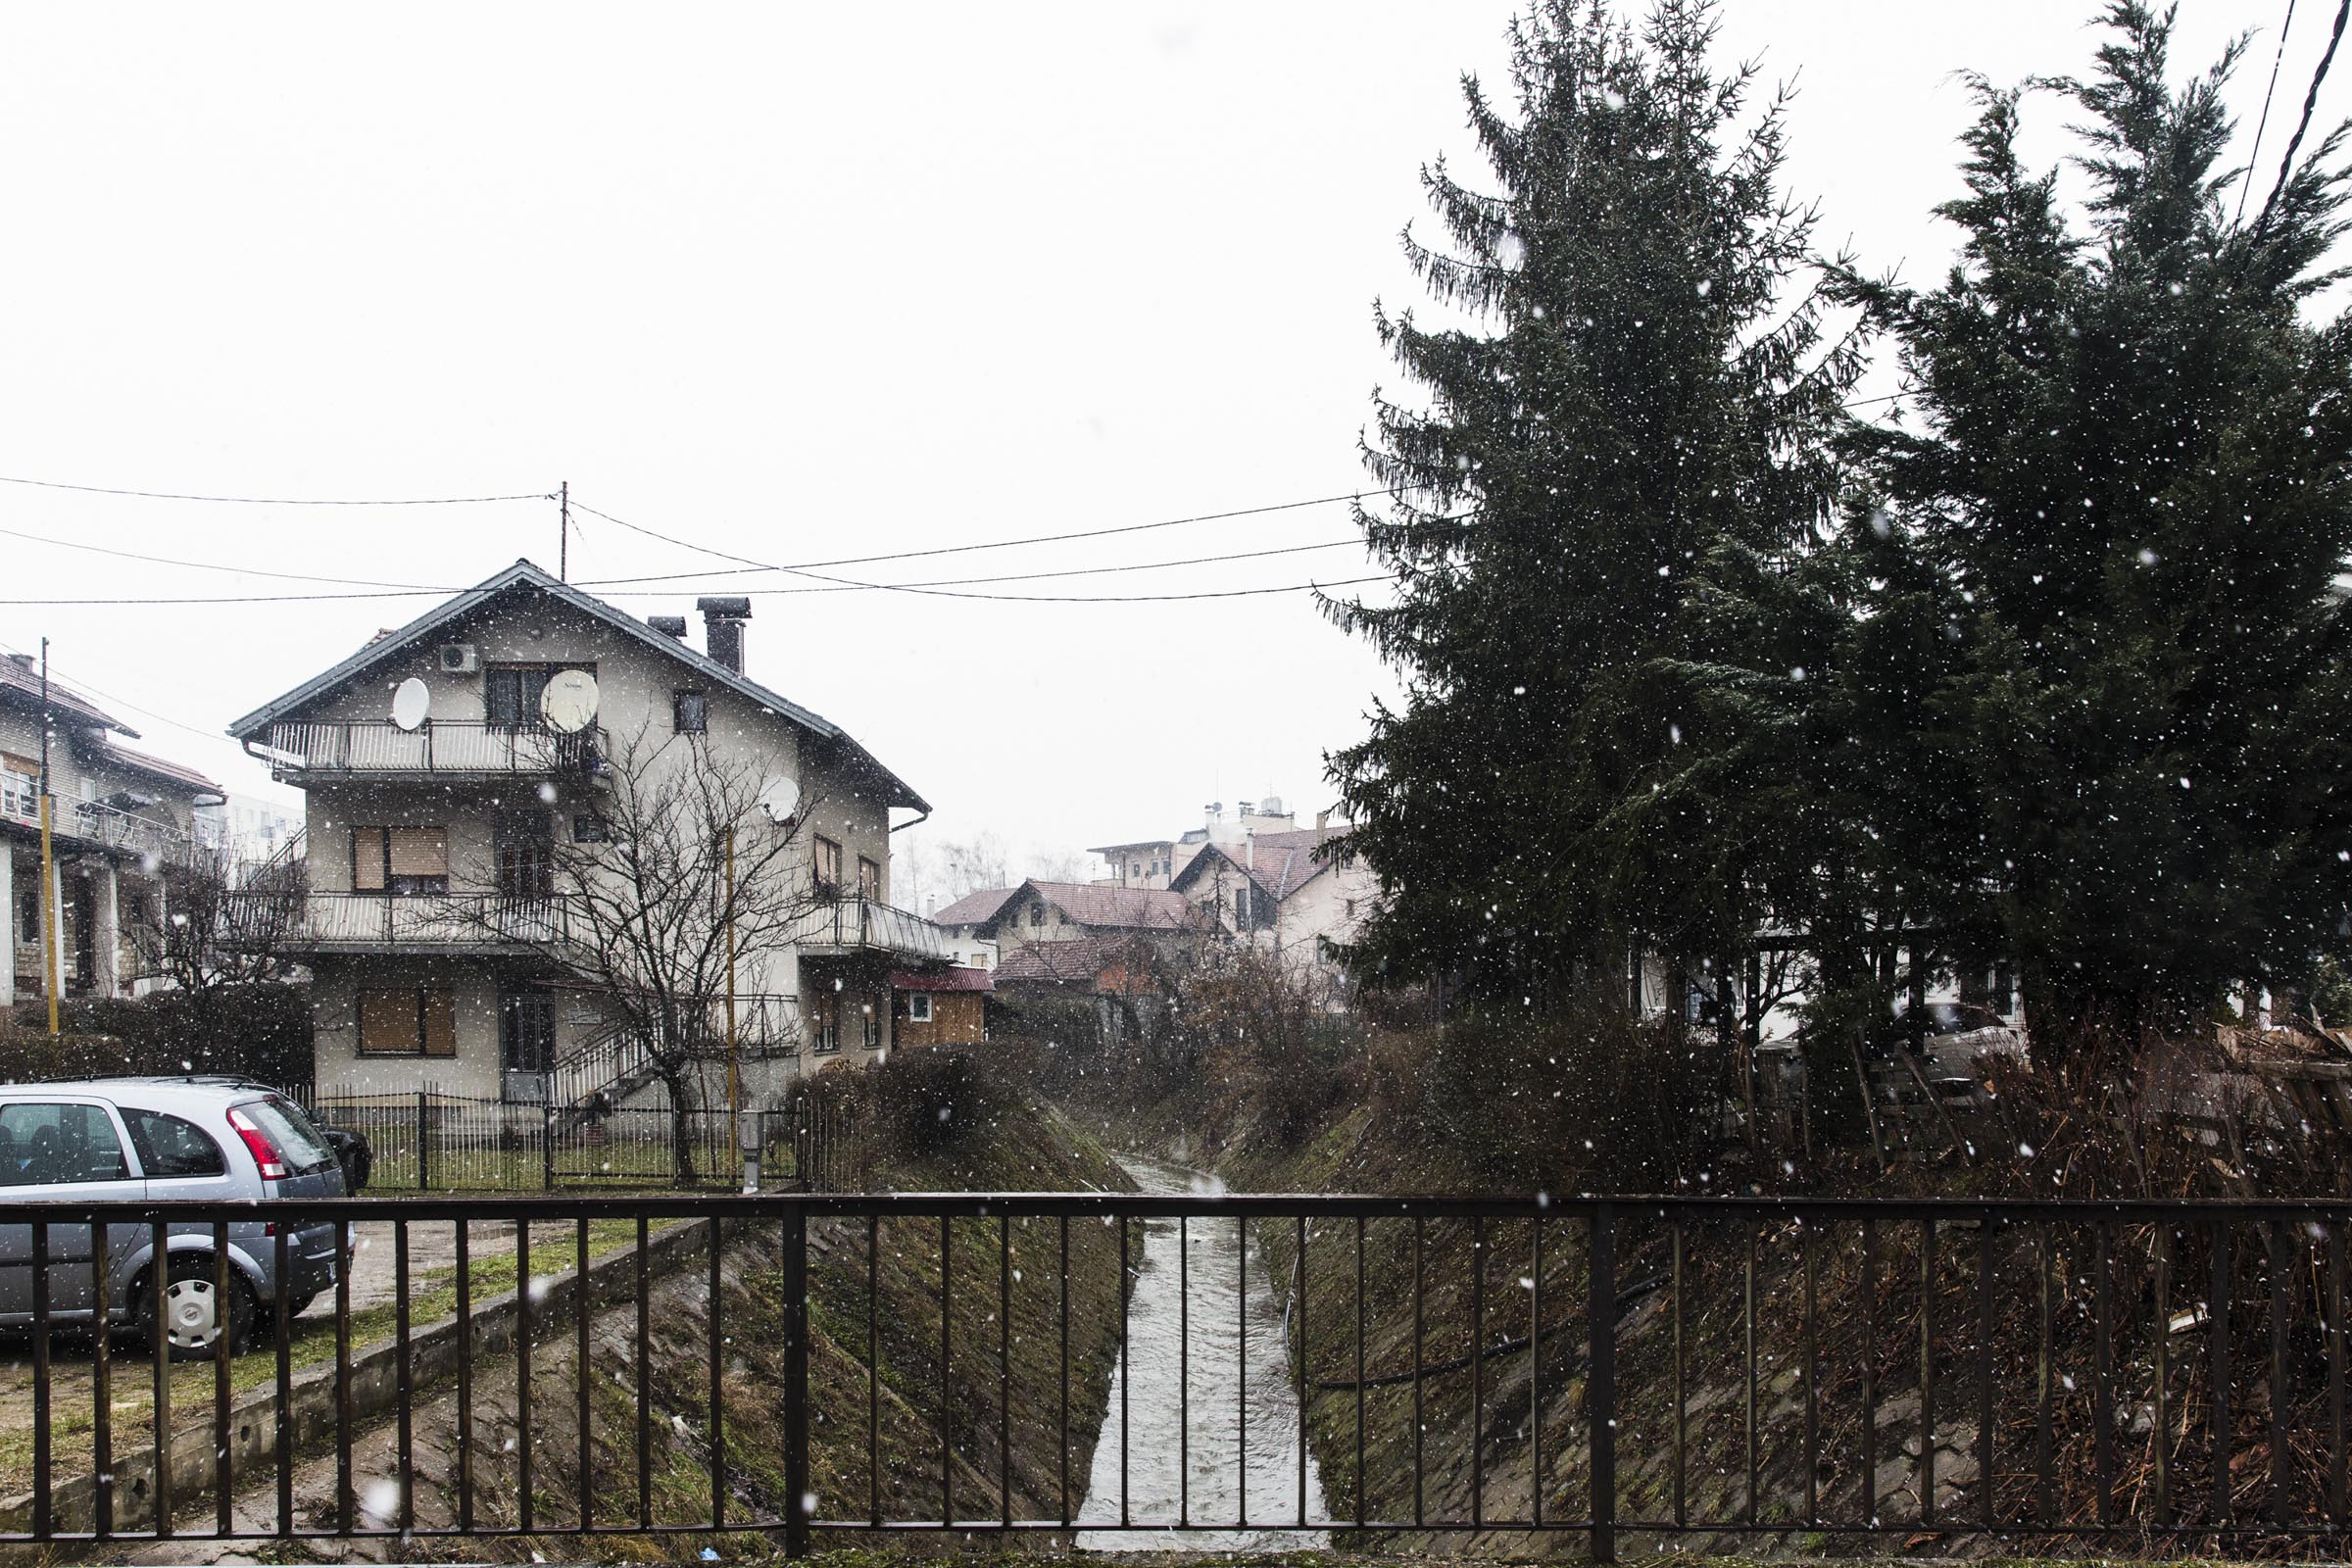 19 gennaio 2019. Le autorità sostengono che David Dragičević si sia suicidato saltando da questo ponte a qualche metro dalla casa che si presume abbia rapinato in precedenza.